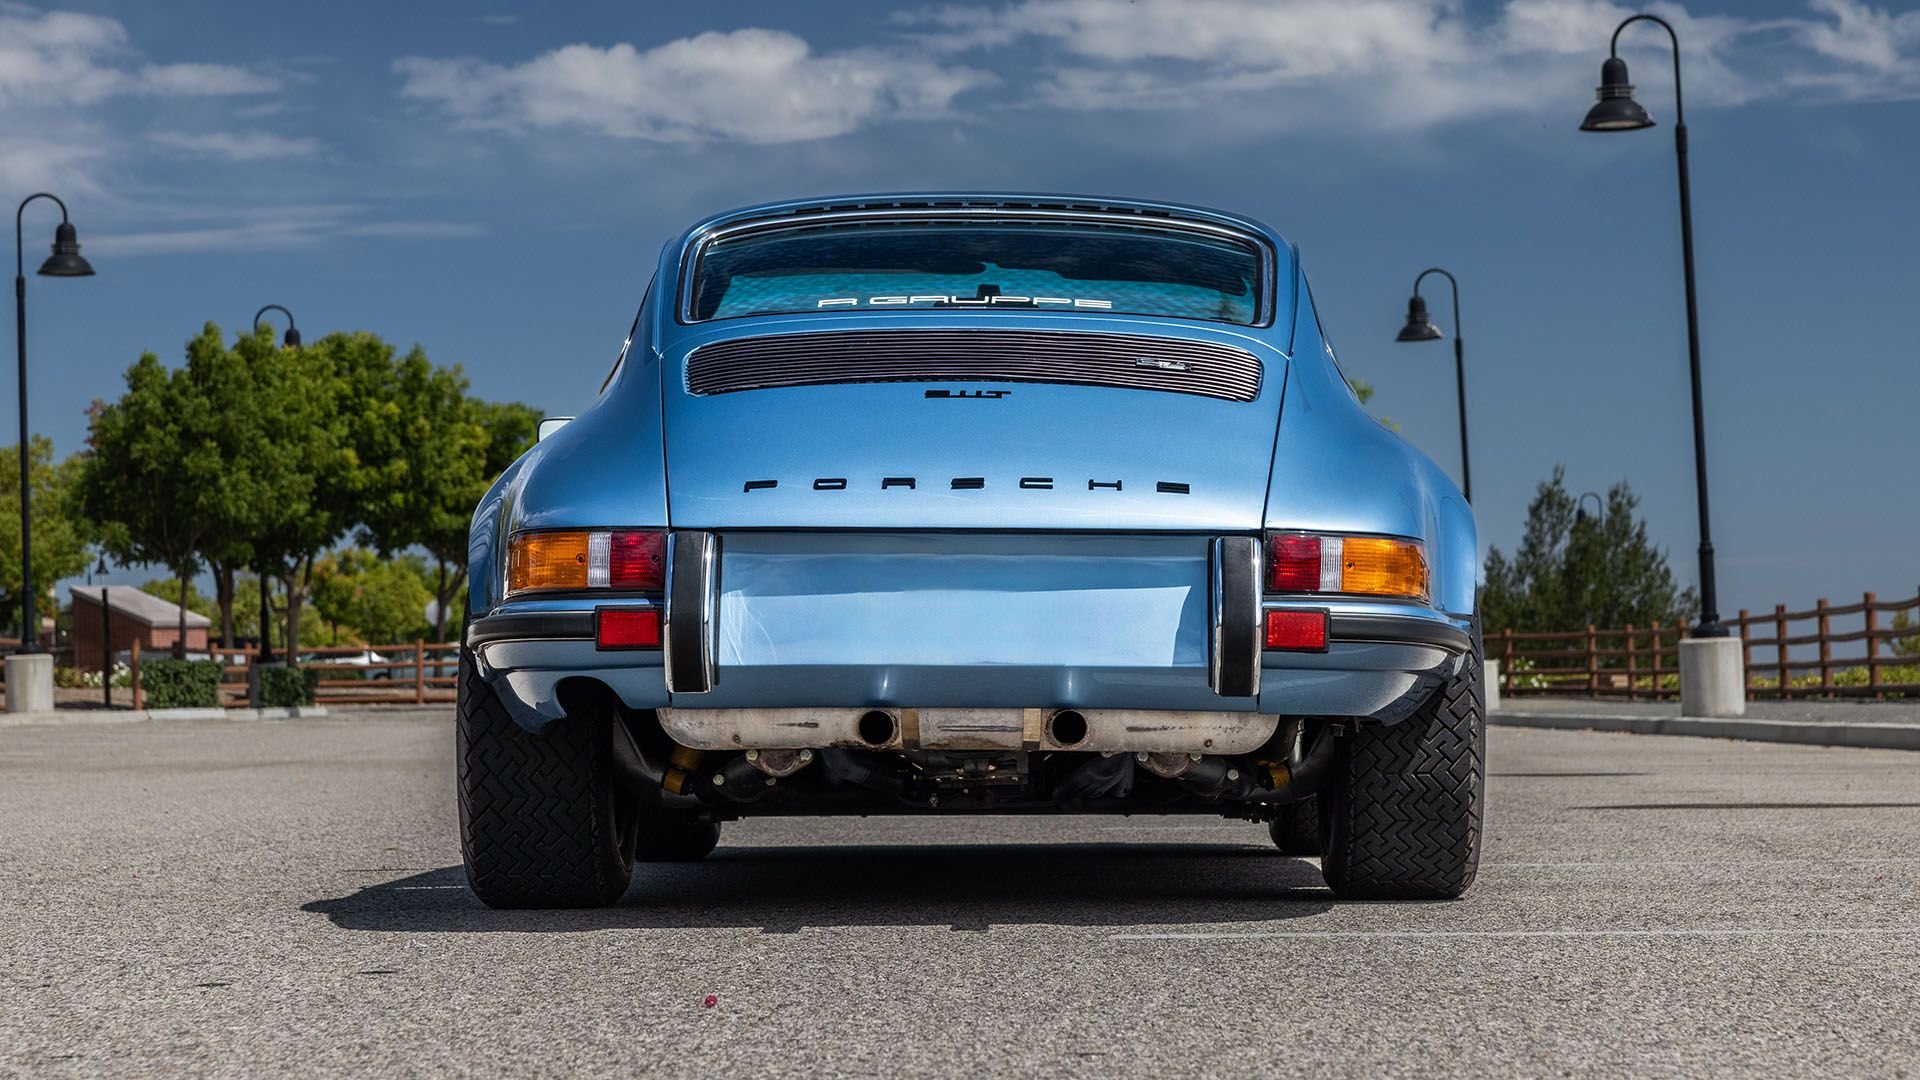 For Sale 1973 Porsche 911 T "Hot Rod" Coupe